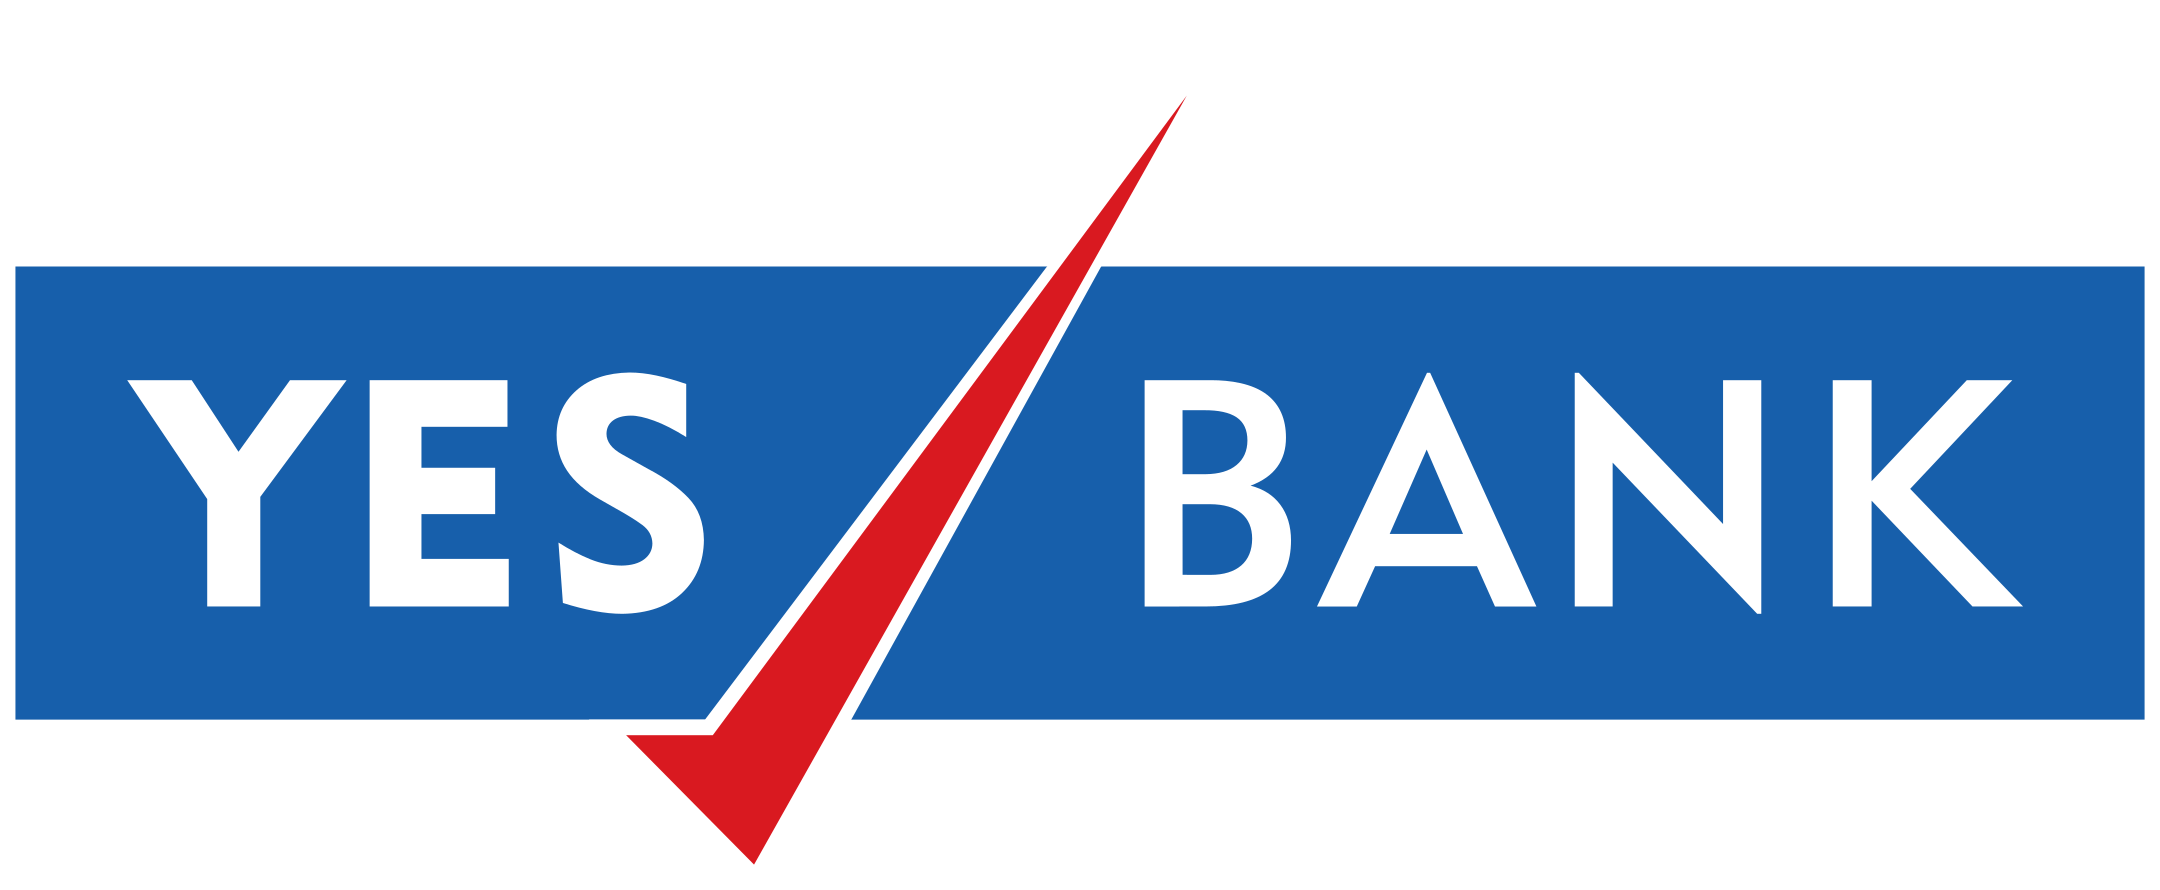 yes bank logo 1 - Yes Bank Logo